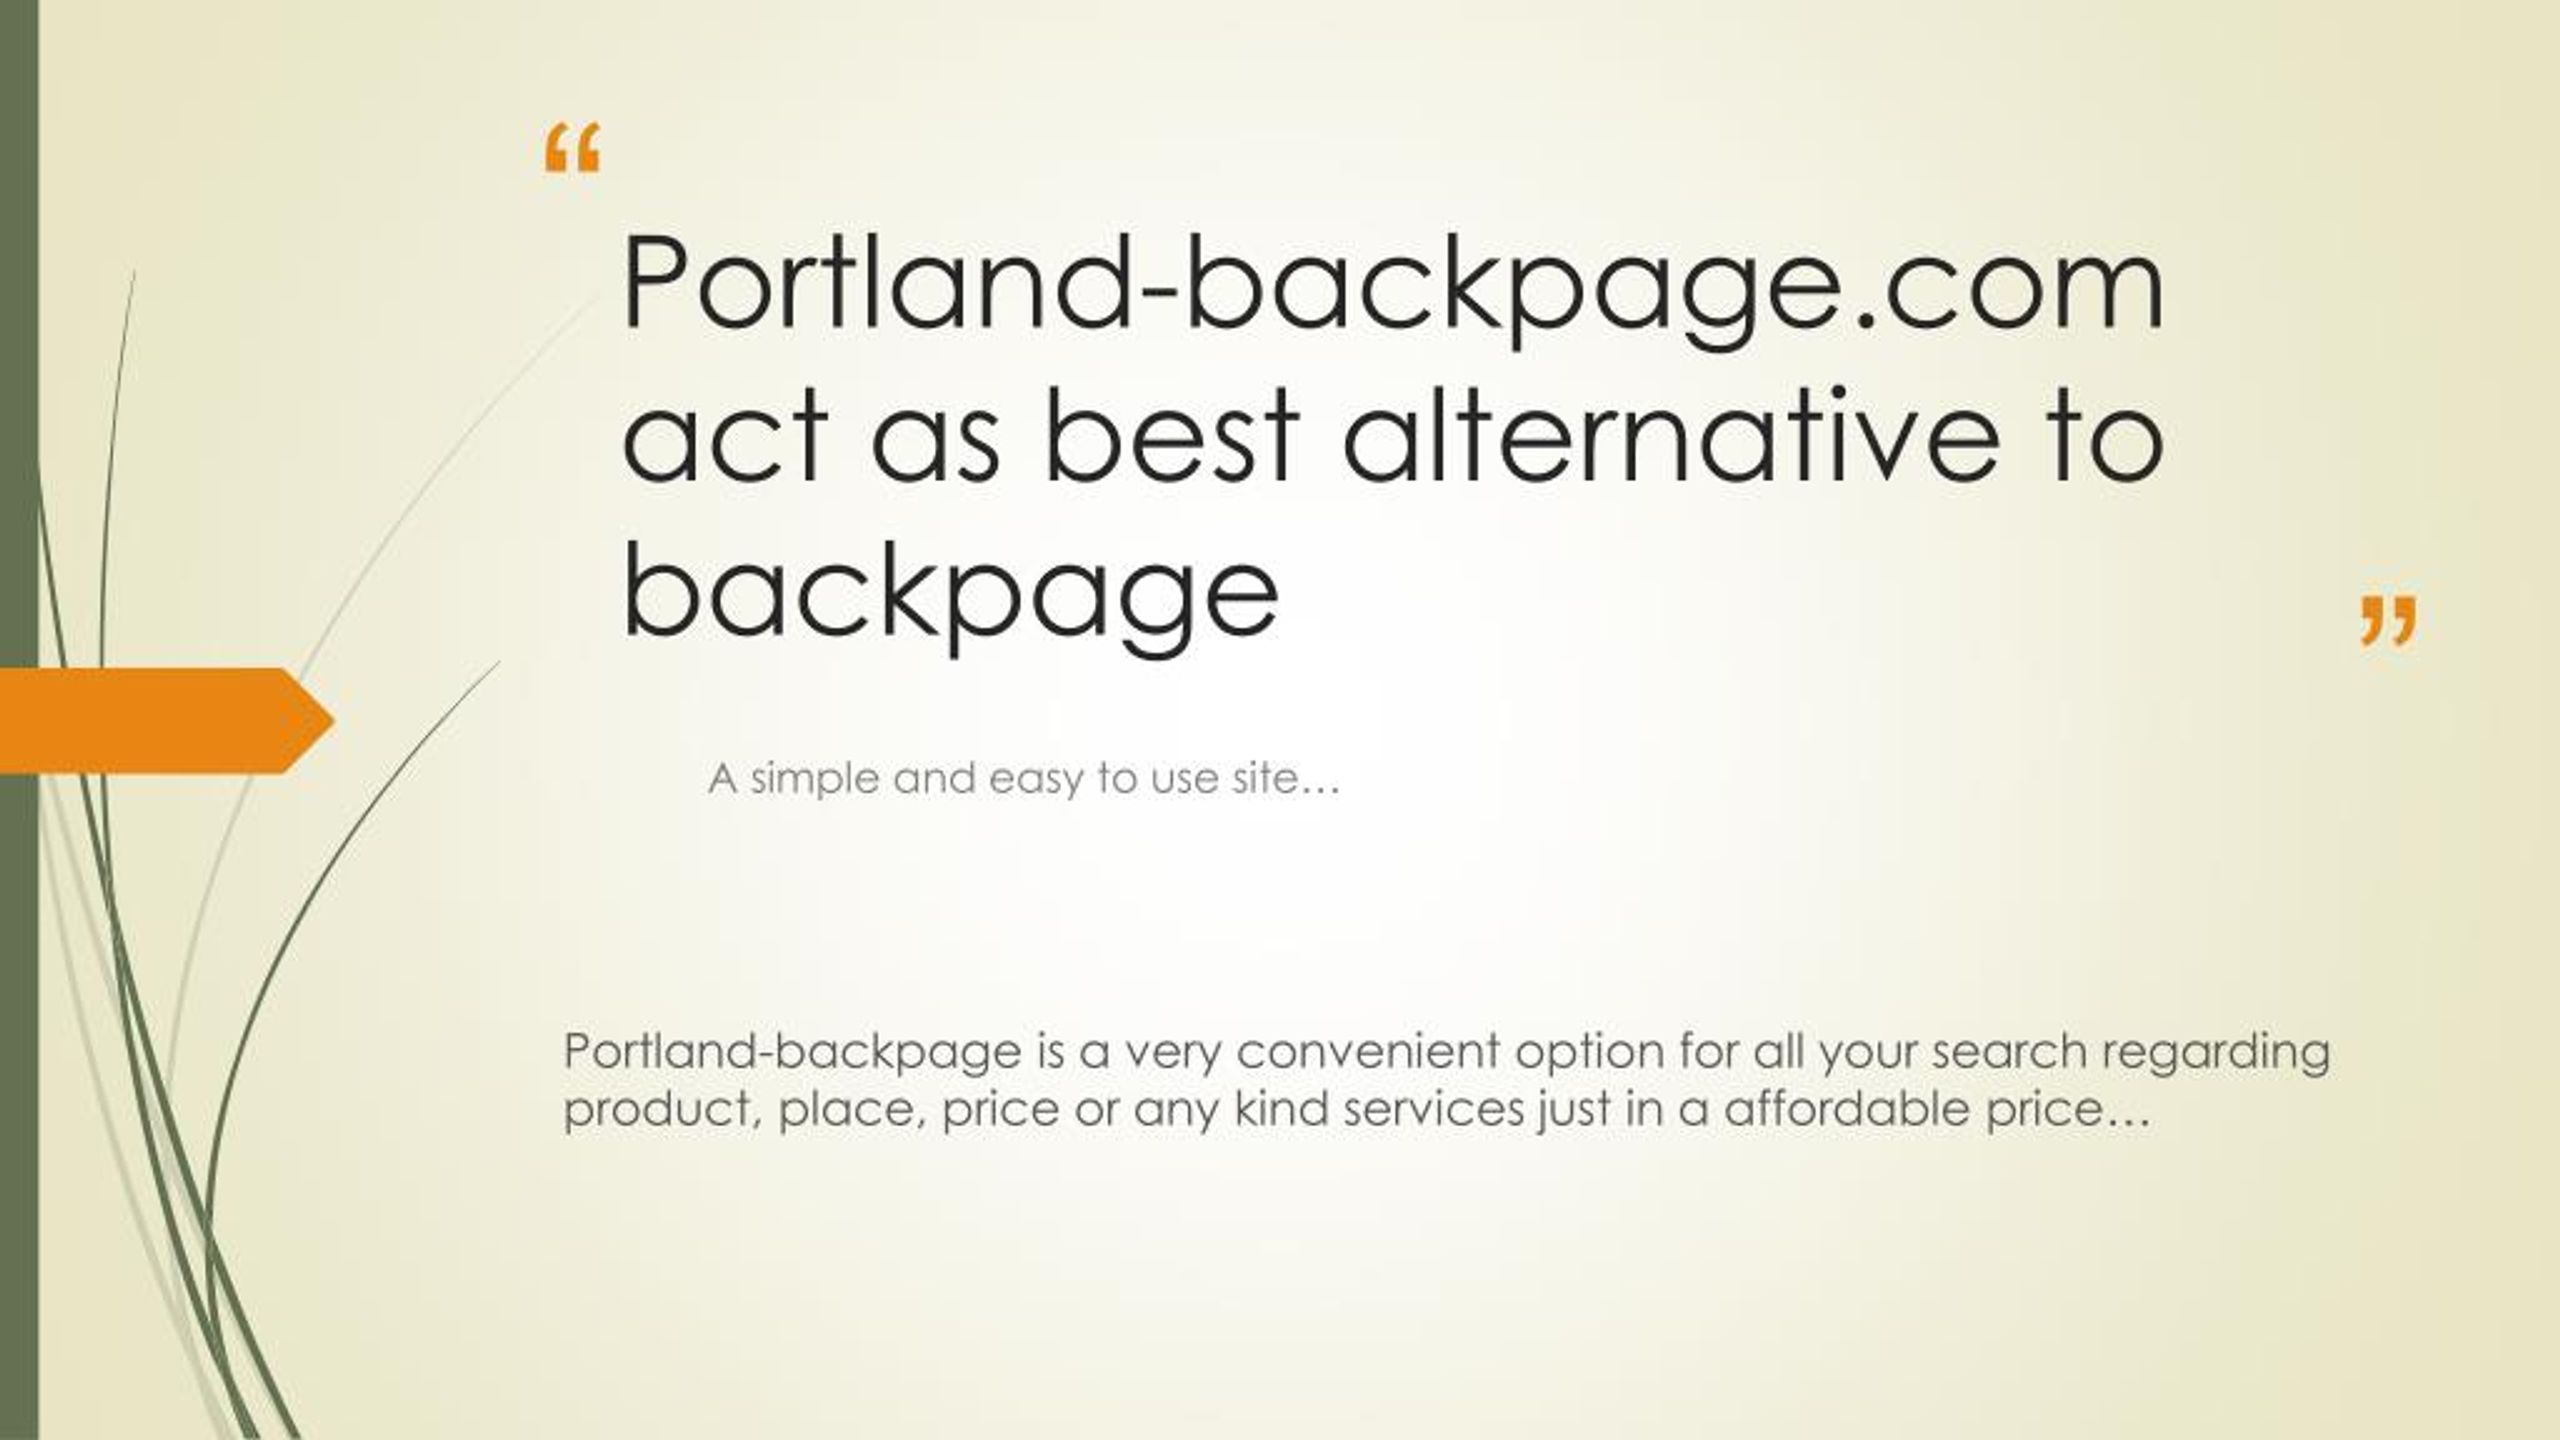 Portland backpage com